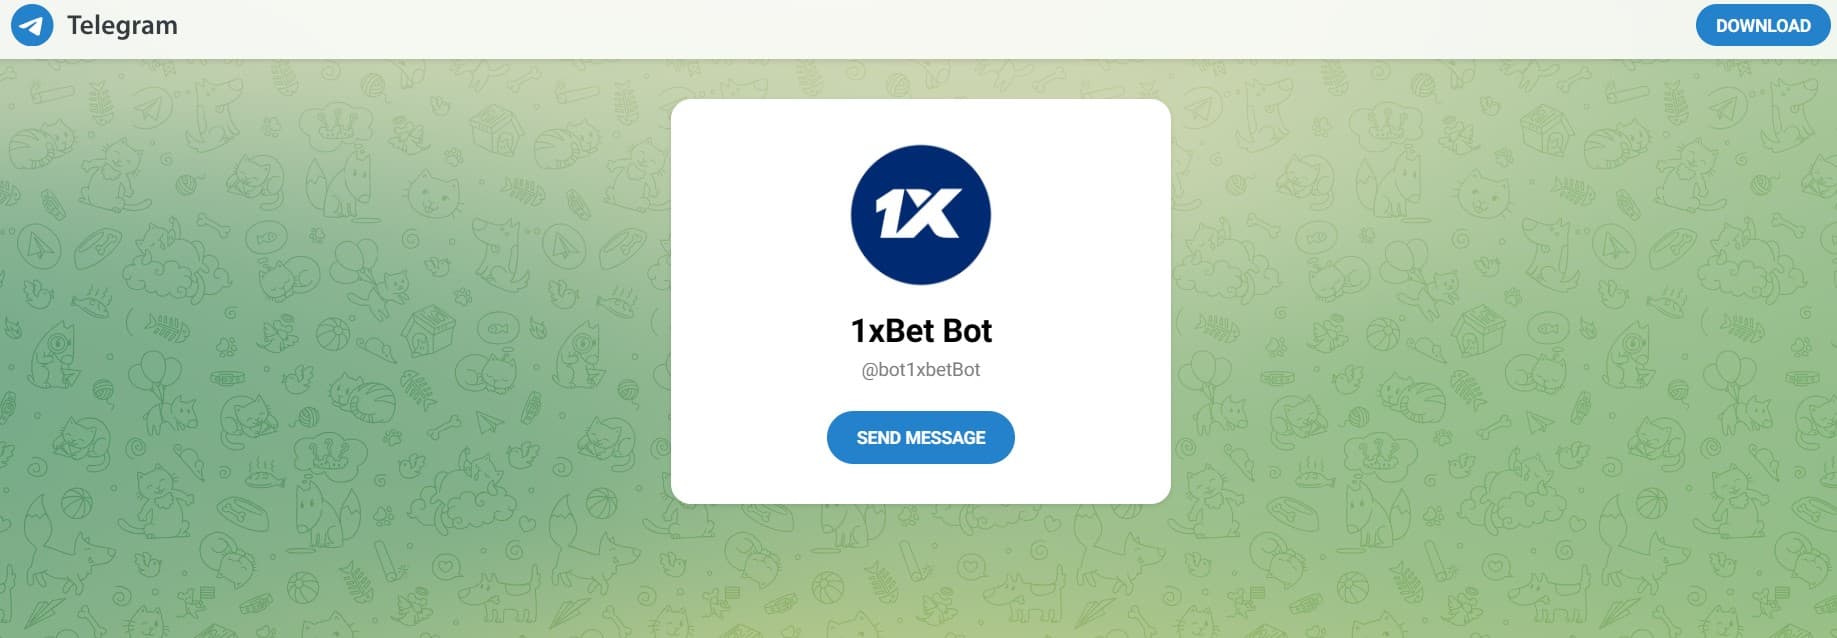 1xbot telegram kazino